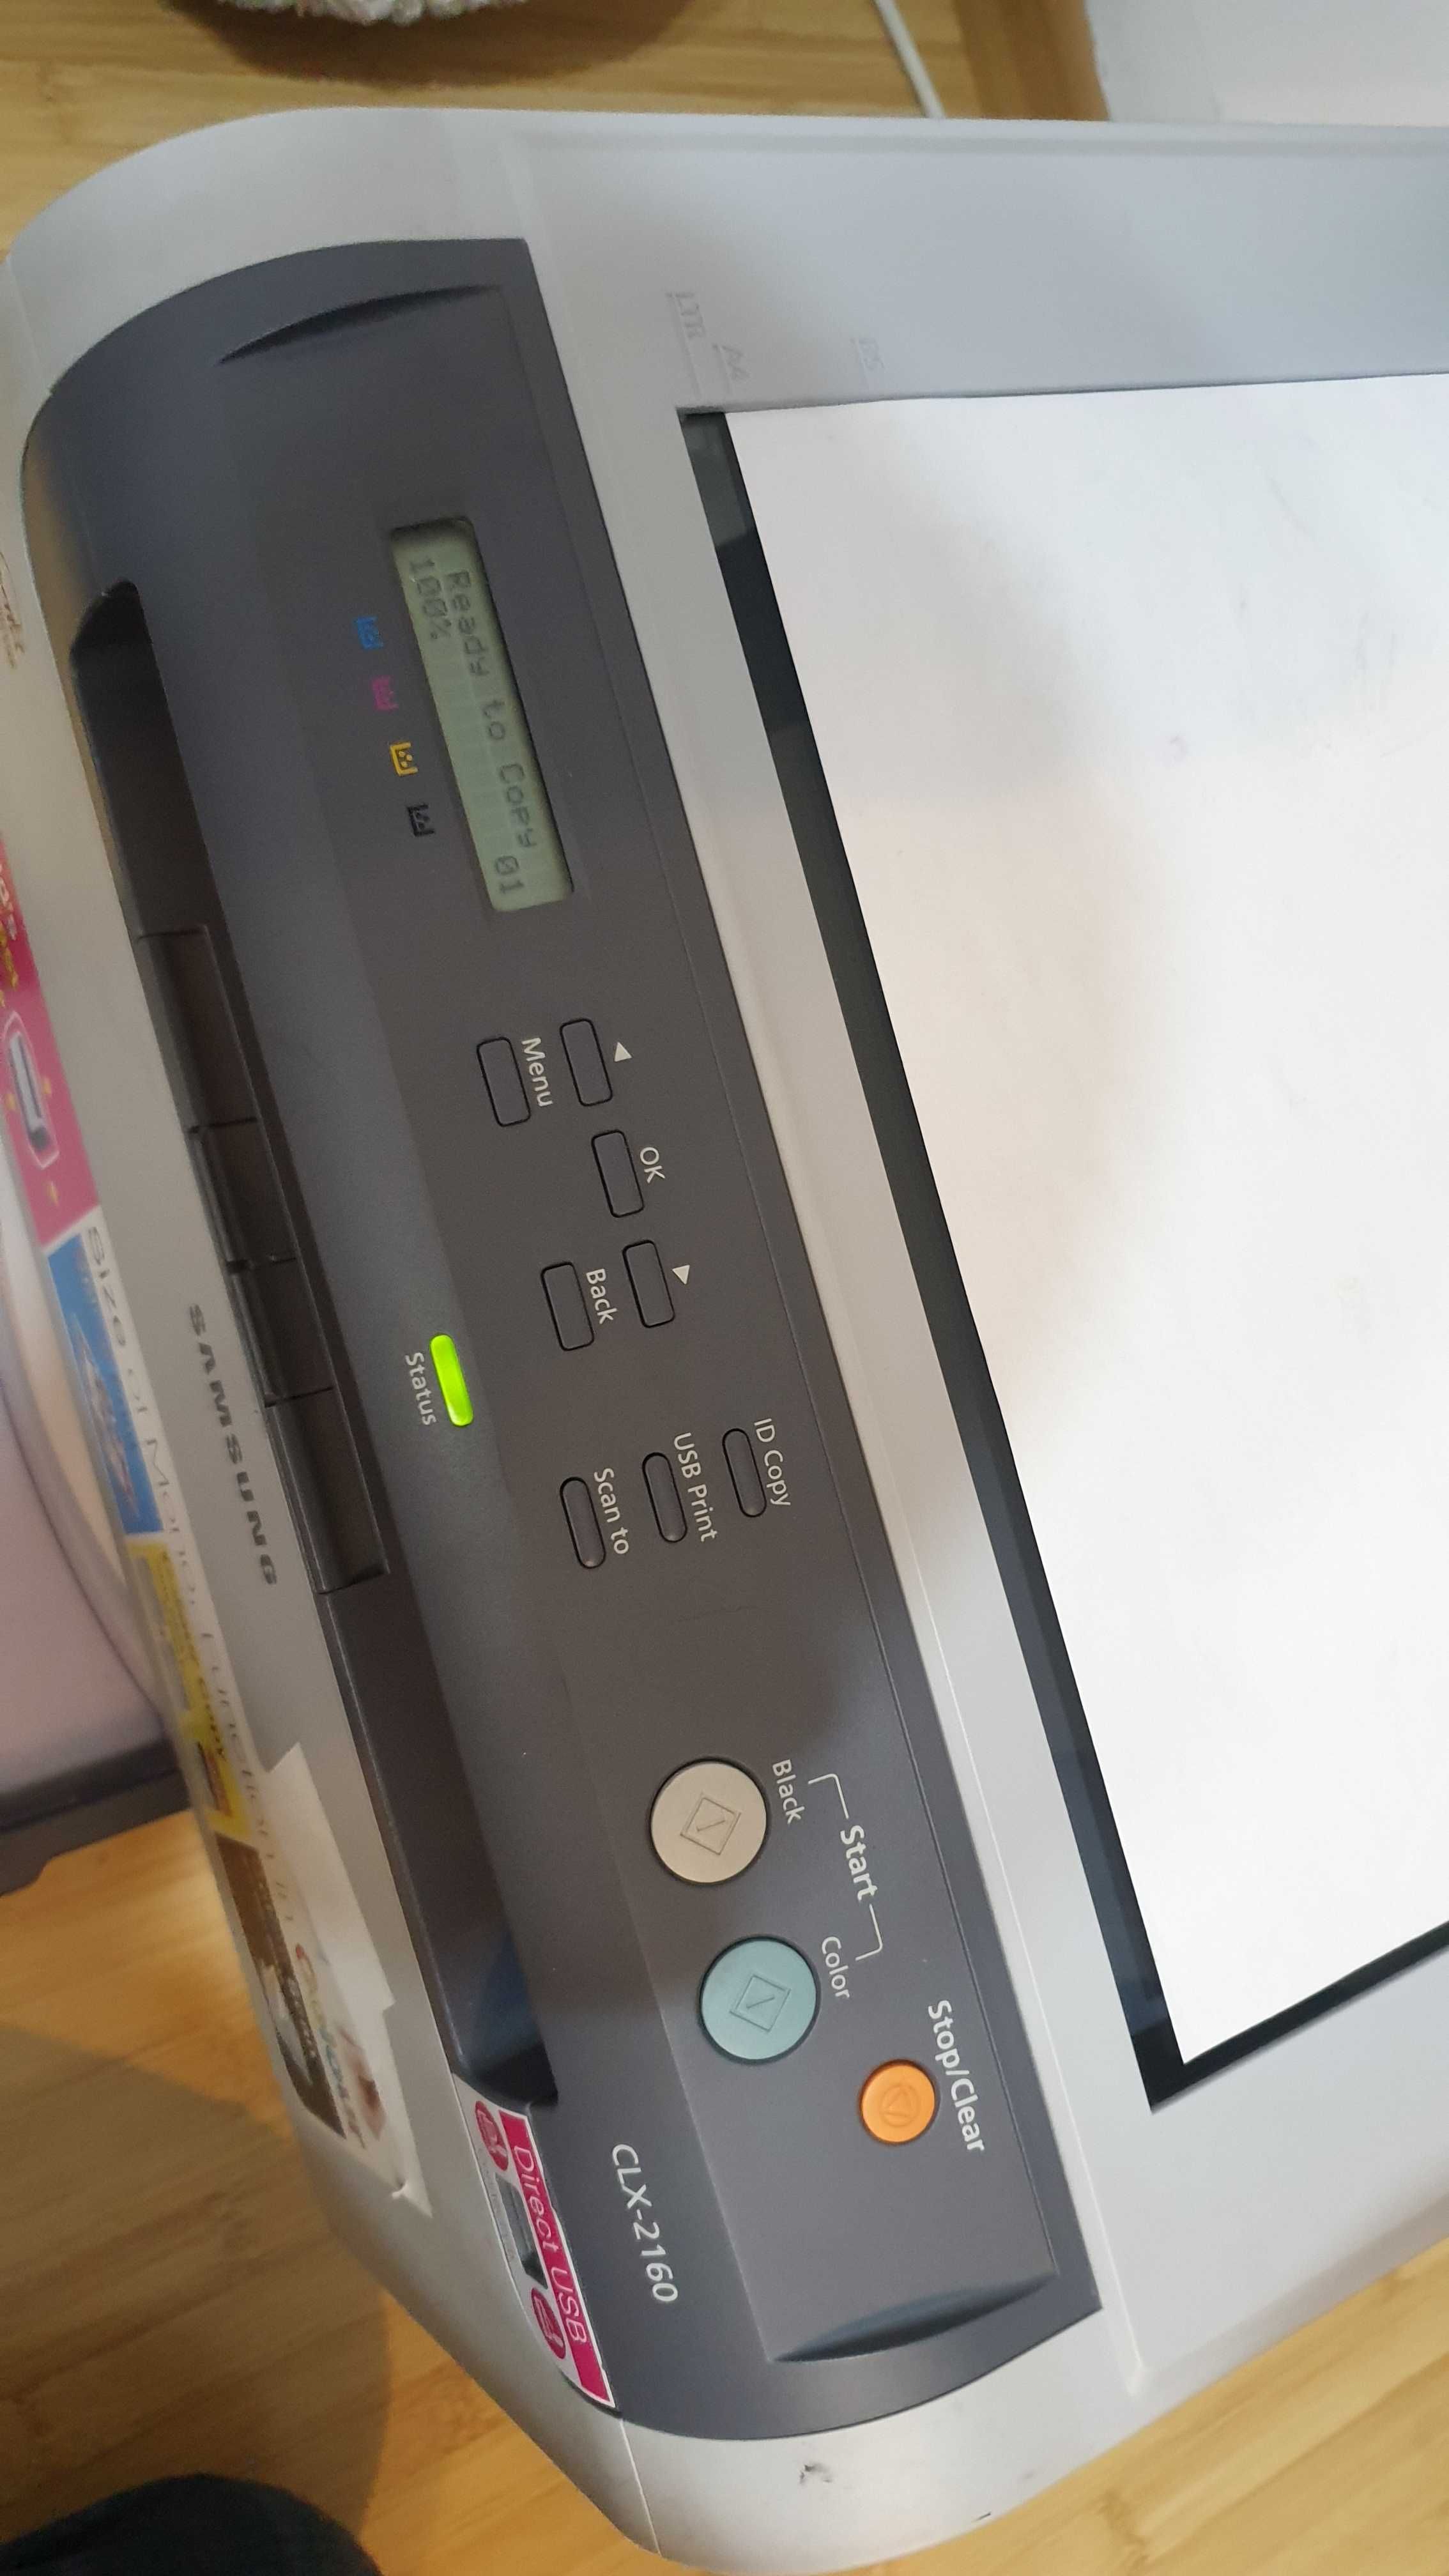 Imprimanta multifunctionala laser color copiator usb  samsung clx 2160